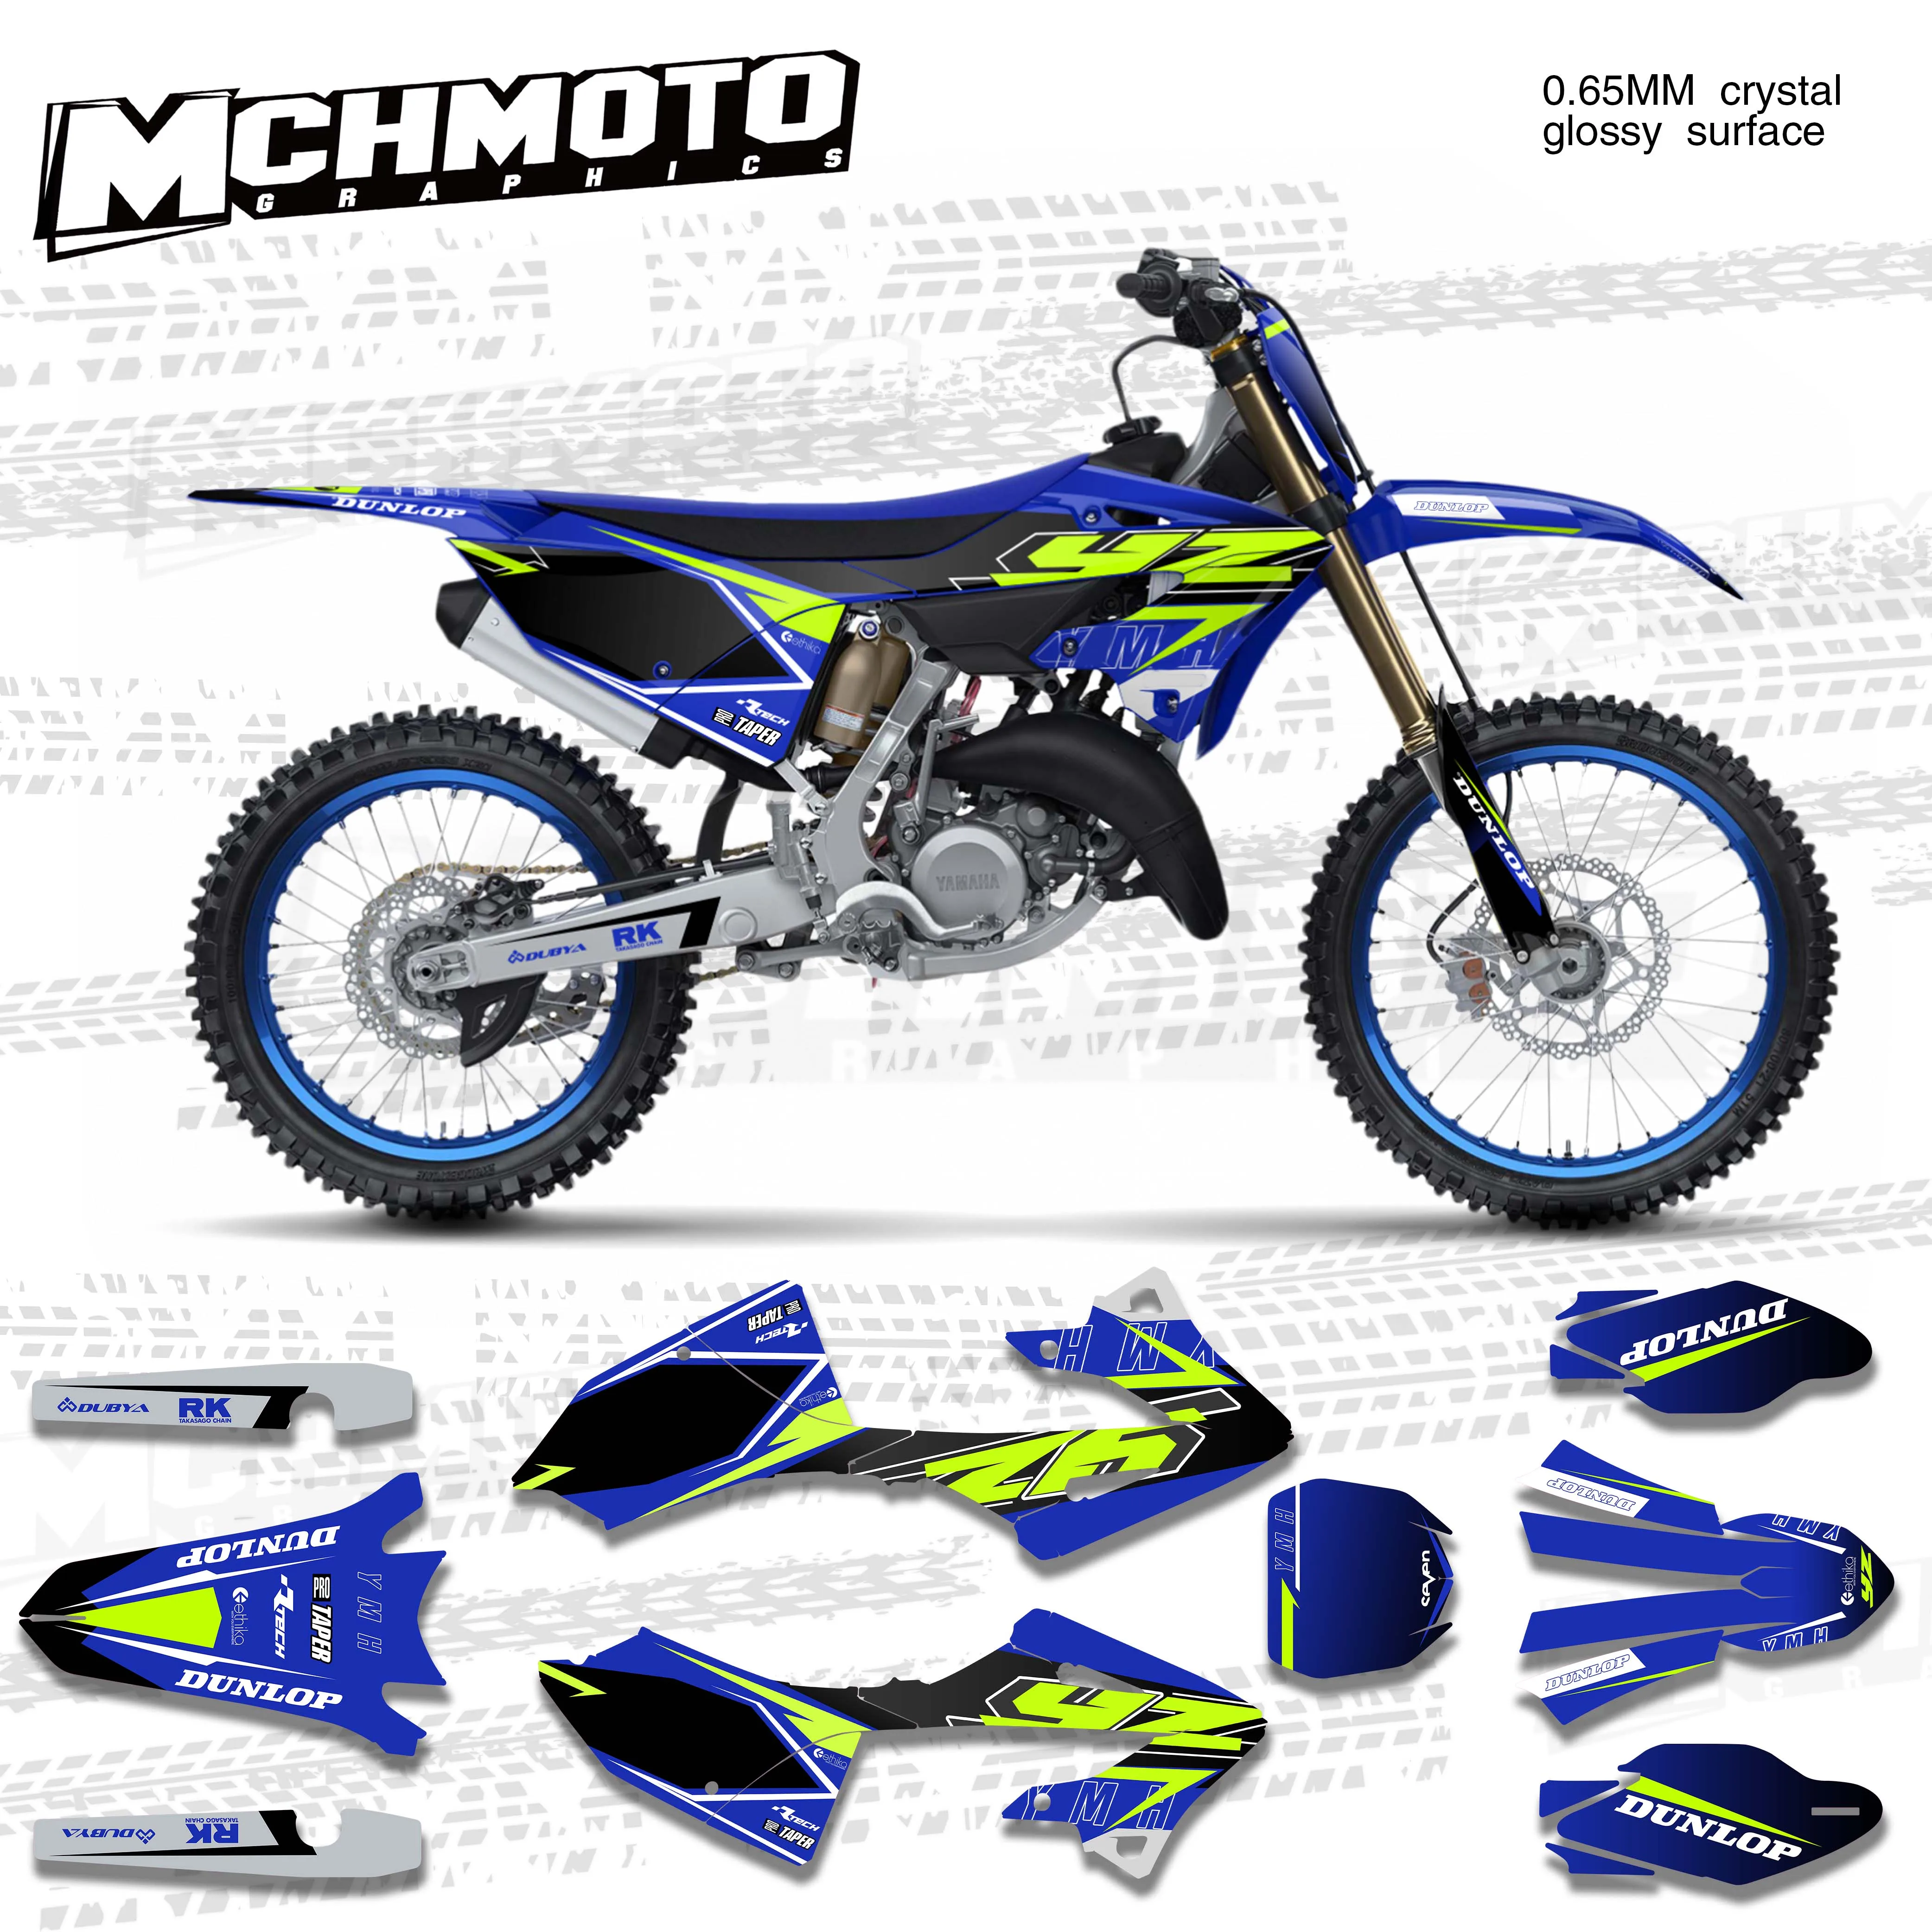 MCHMFG-Kit de calcomanías y pegatinas gráficas para equipo de motocicleta, para YAMAHA 2022, YZ125, 250